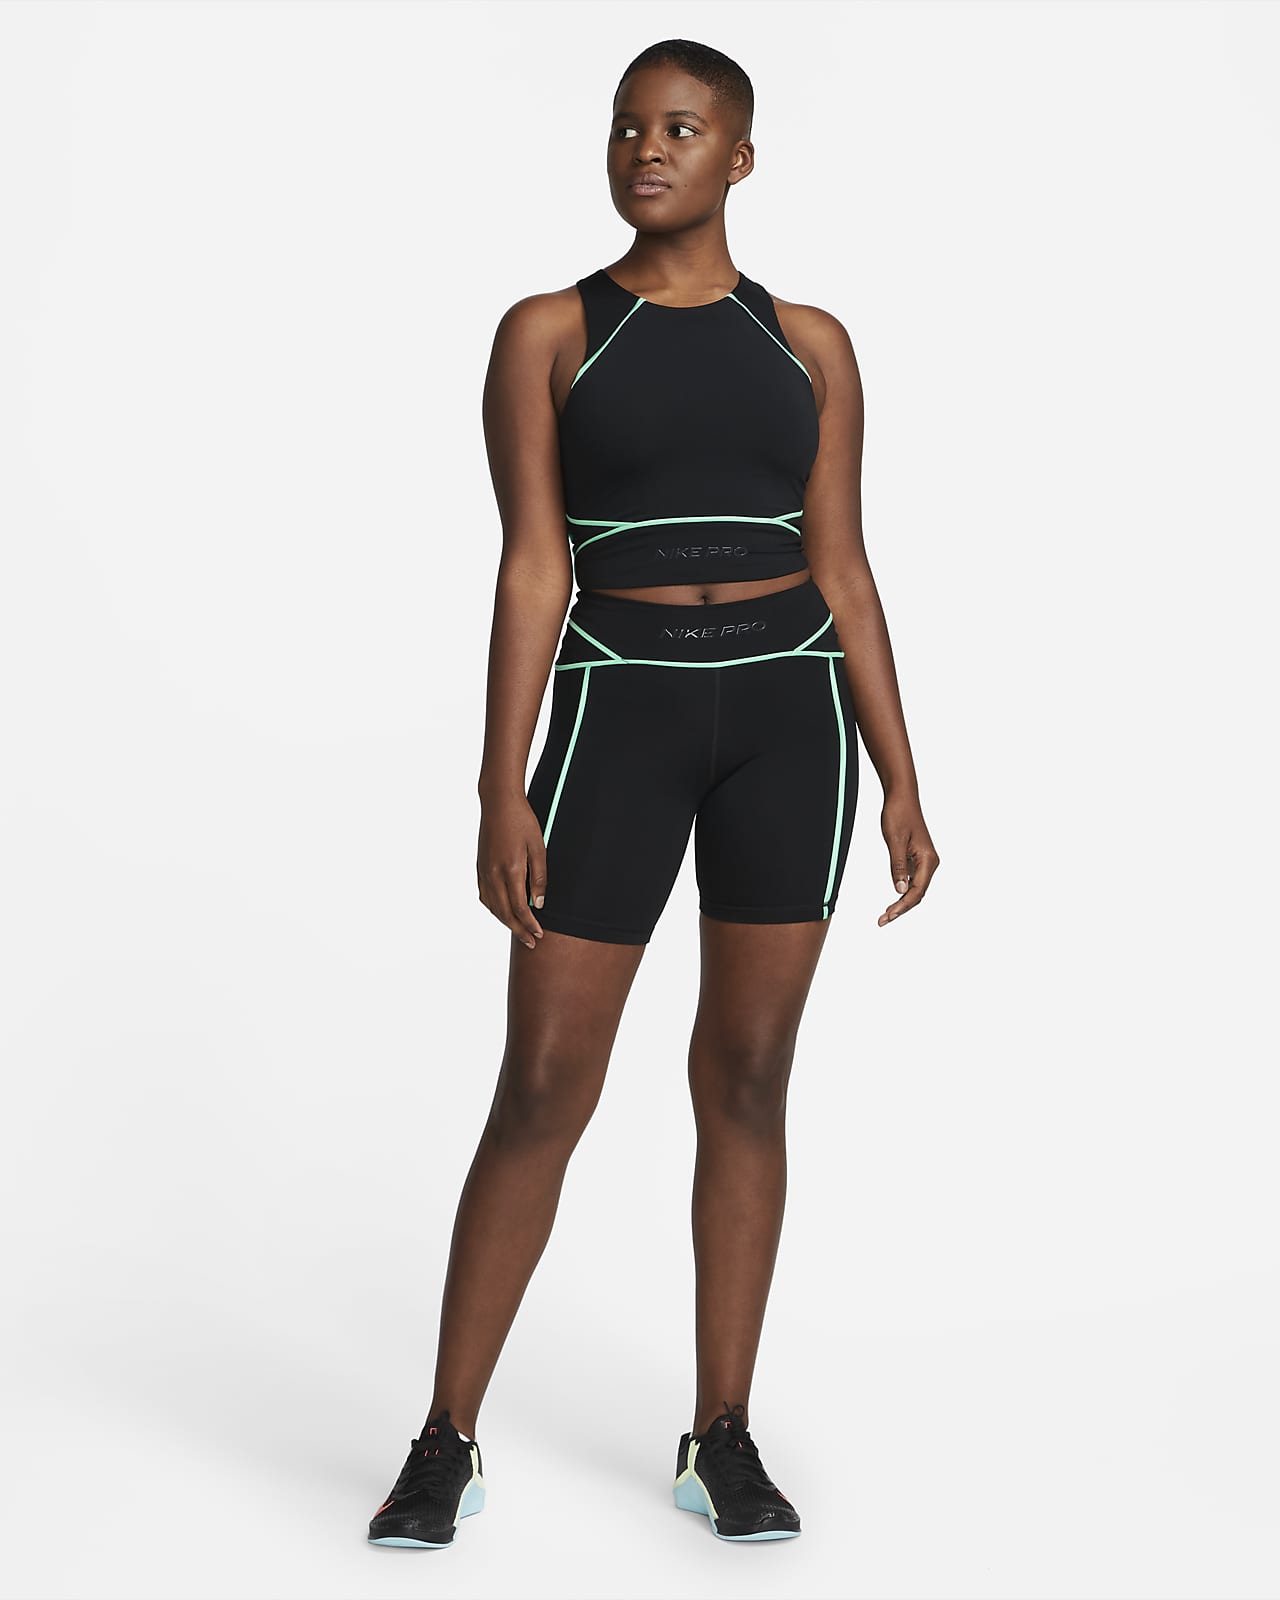 Women's Nike Pro Training & Gym Clothing. Nike CA